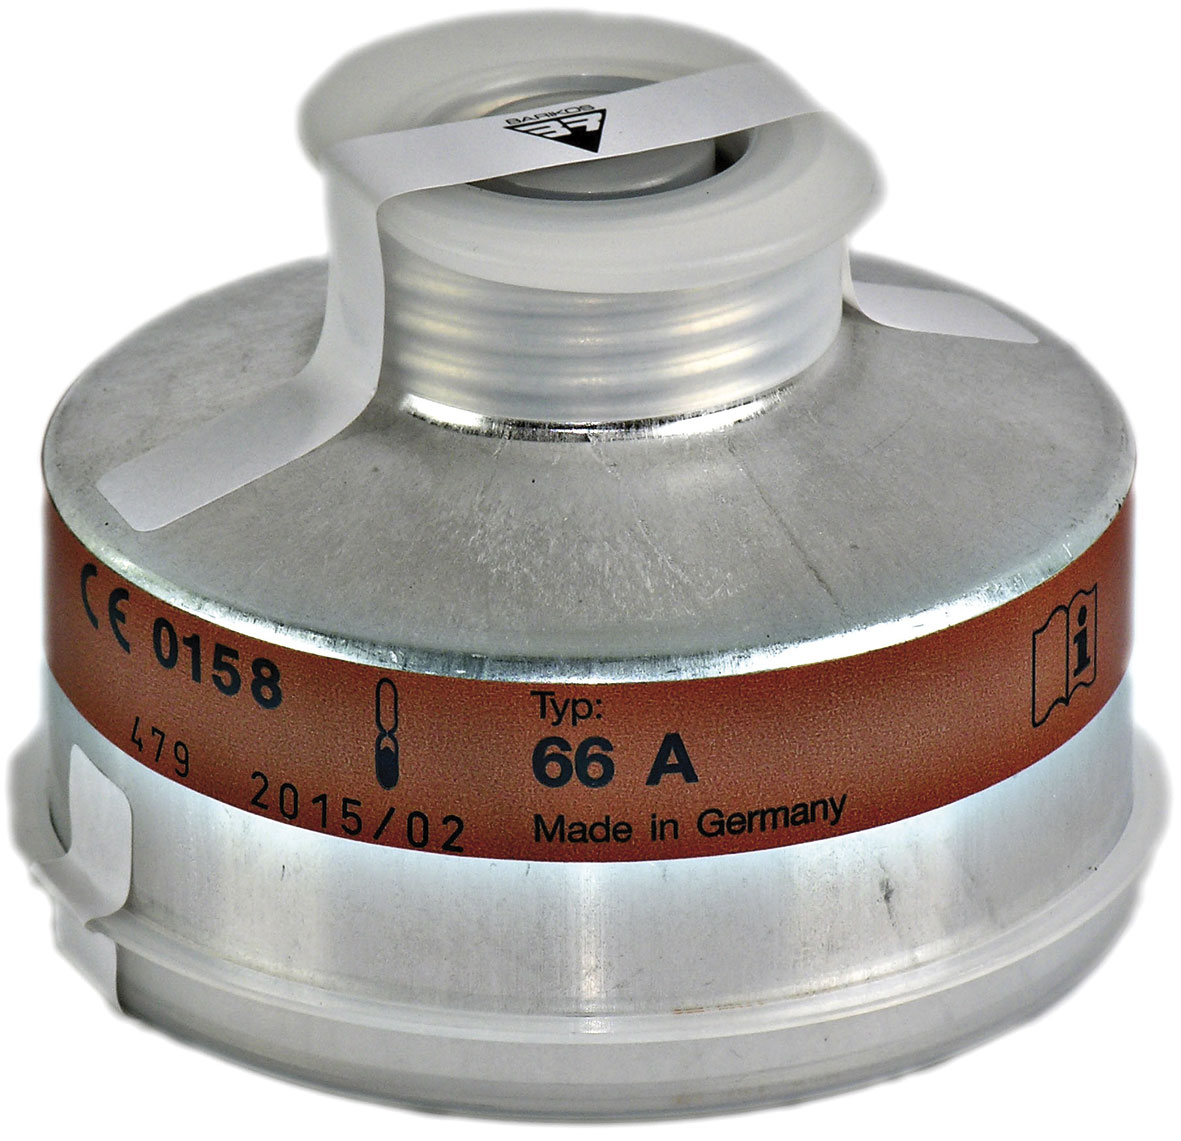 Filtro respiratorio rosca para gases inorgánicos y partículas tóxicas. Clase protección: B2-P3. BARIKOS